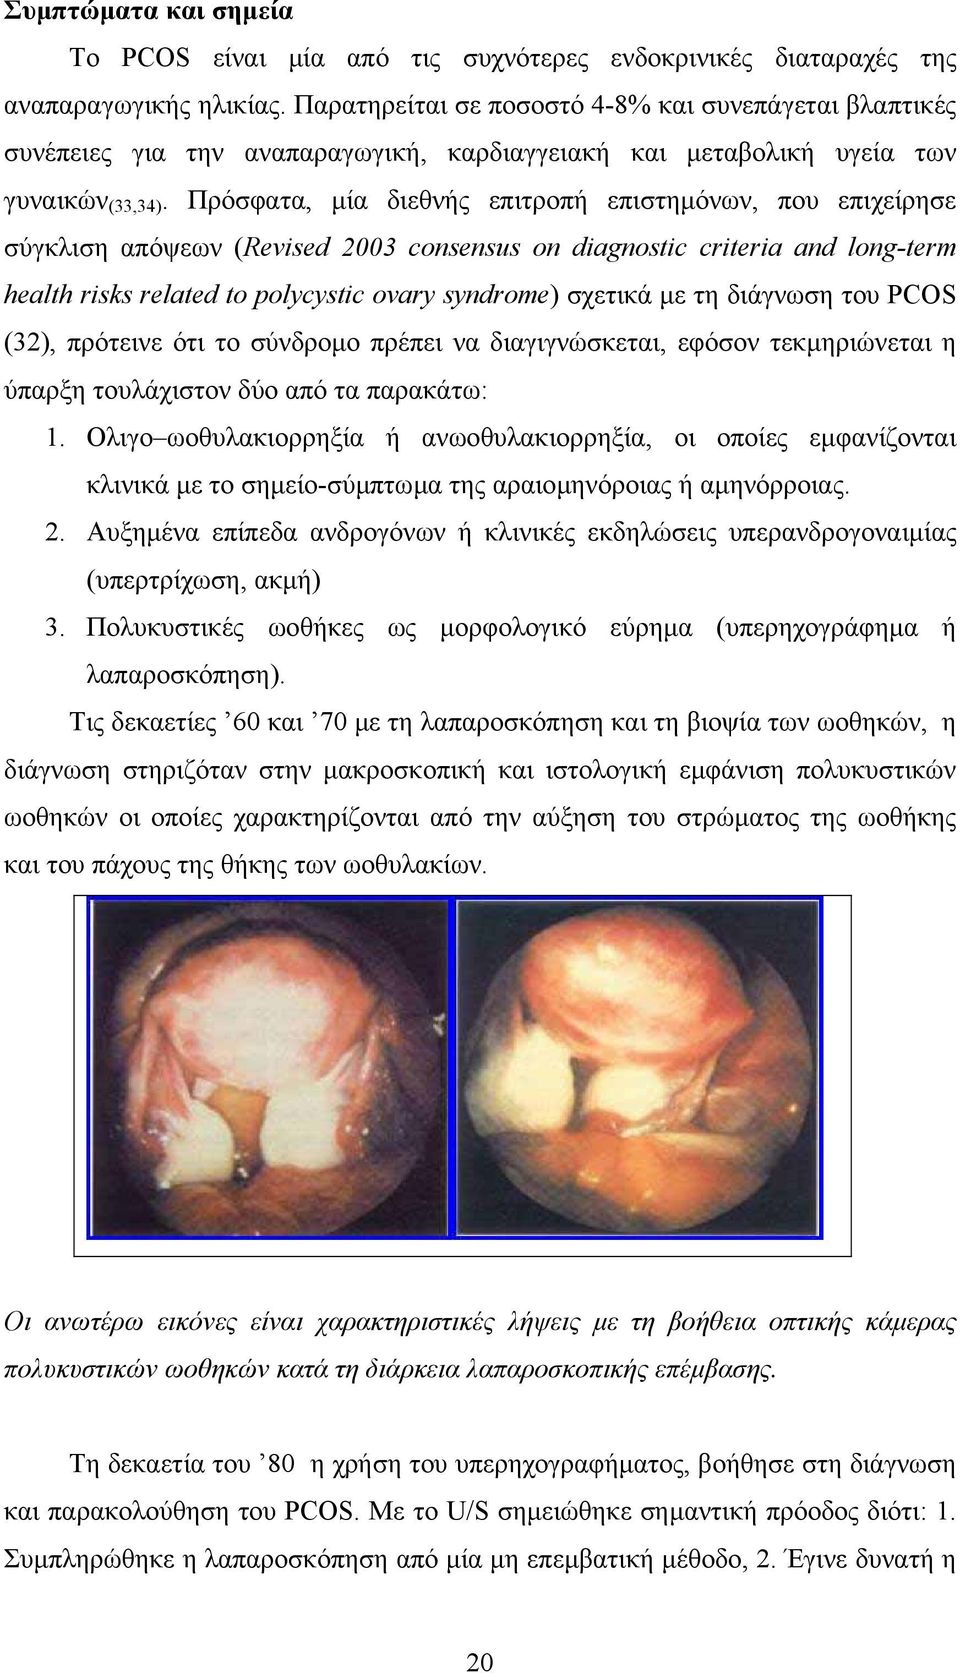 Πρόσφατα, µία διεθνής επιτροπή επιστηµόνων, που επιχείρησε σύγκλιση απόψεων (Revised 2003 consensus on diagnostic criteria and long-term health risks related to polycystic ovary syndrome) σχετικά µε